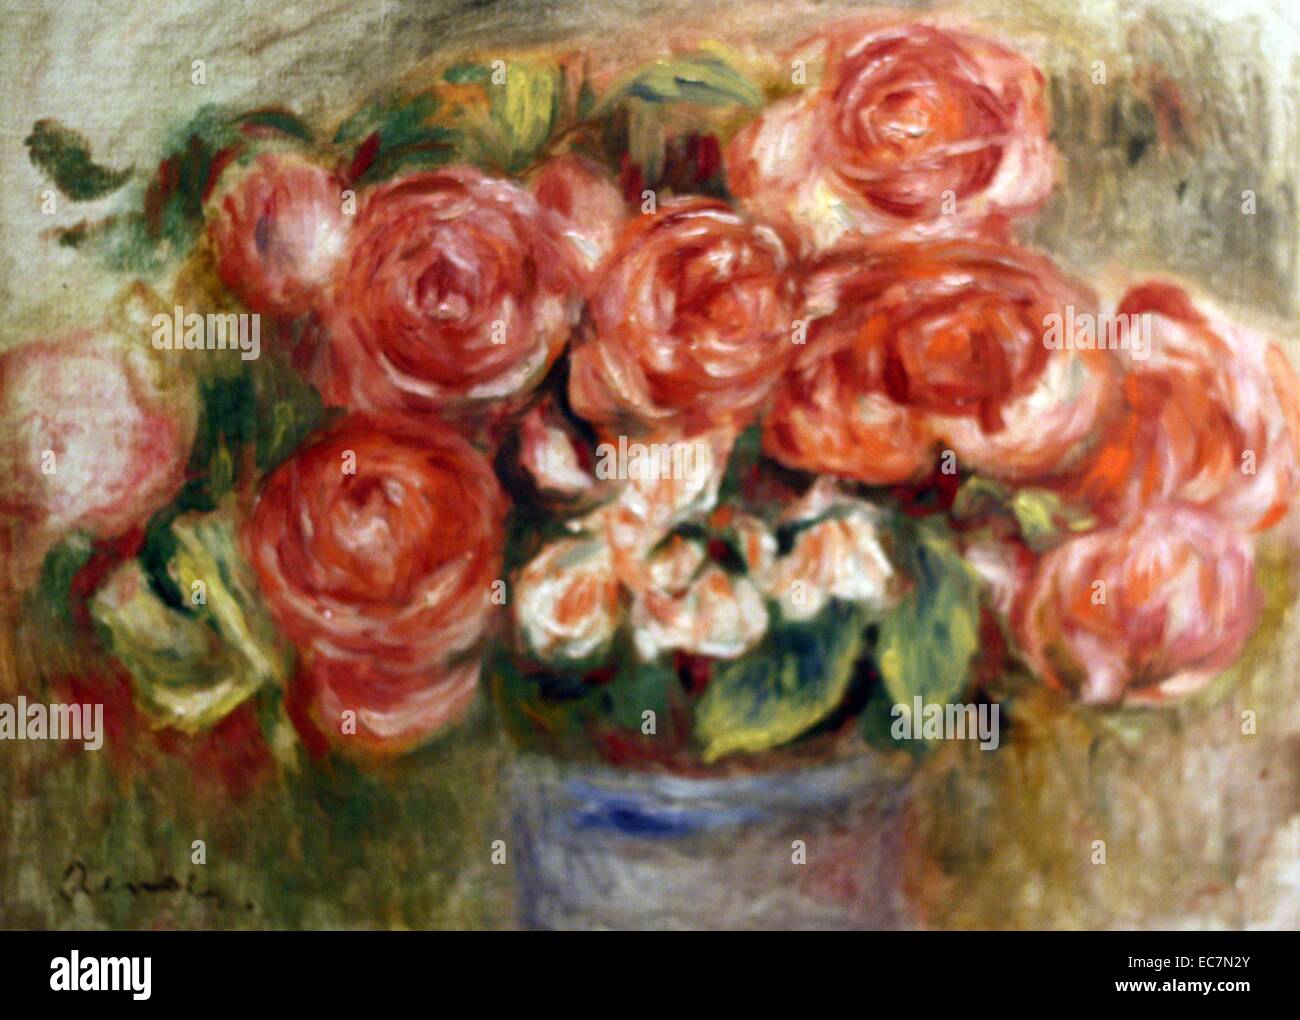 Pierre-Auguste Renoir (1841-1919) Nature morte de Roses dans un vase, de l'huile sur toile. Vers la fin de sa vie, Renoir a peint un grand nombre de natures mortes de fleurs. Ces comprenait une série de roses dans des bols ronds. Ils ont été peints rapidement et montrent l'artiste de faire des expériences avec des caractères gras de couleur et de ton, dans le cadre d'une modeste composition. Banque D'Images